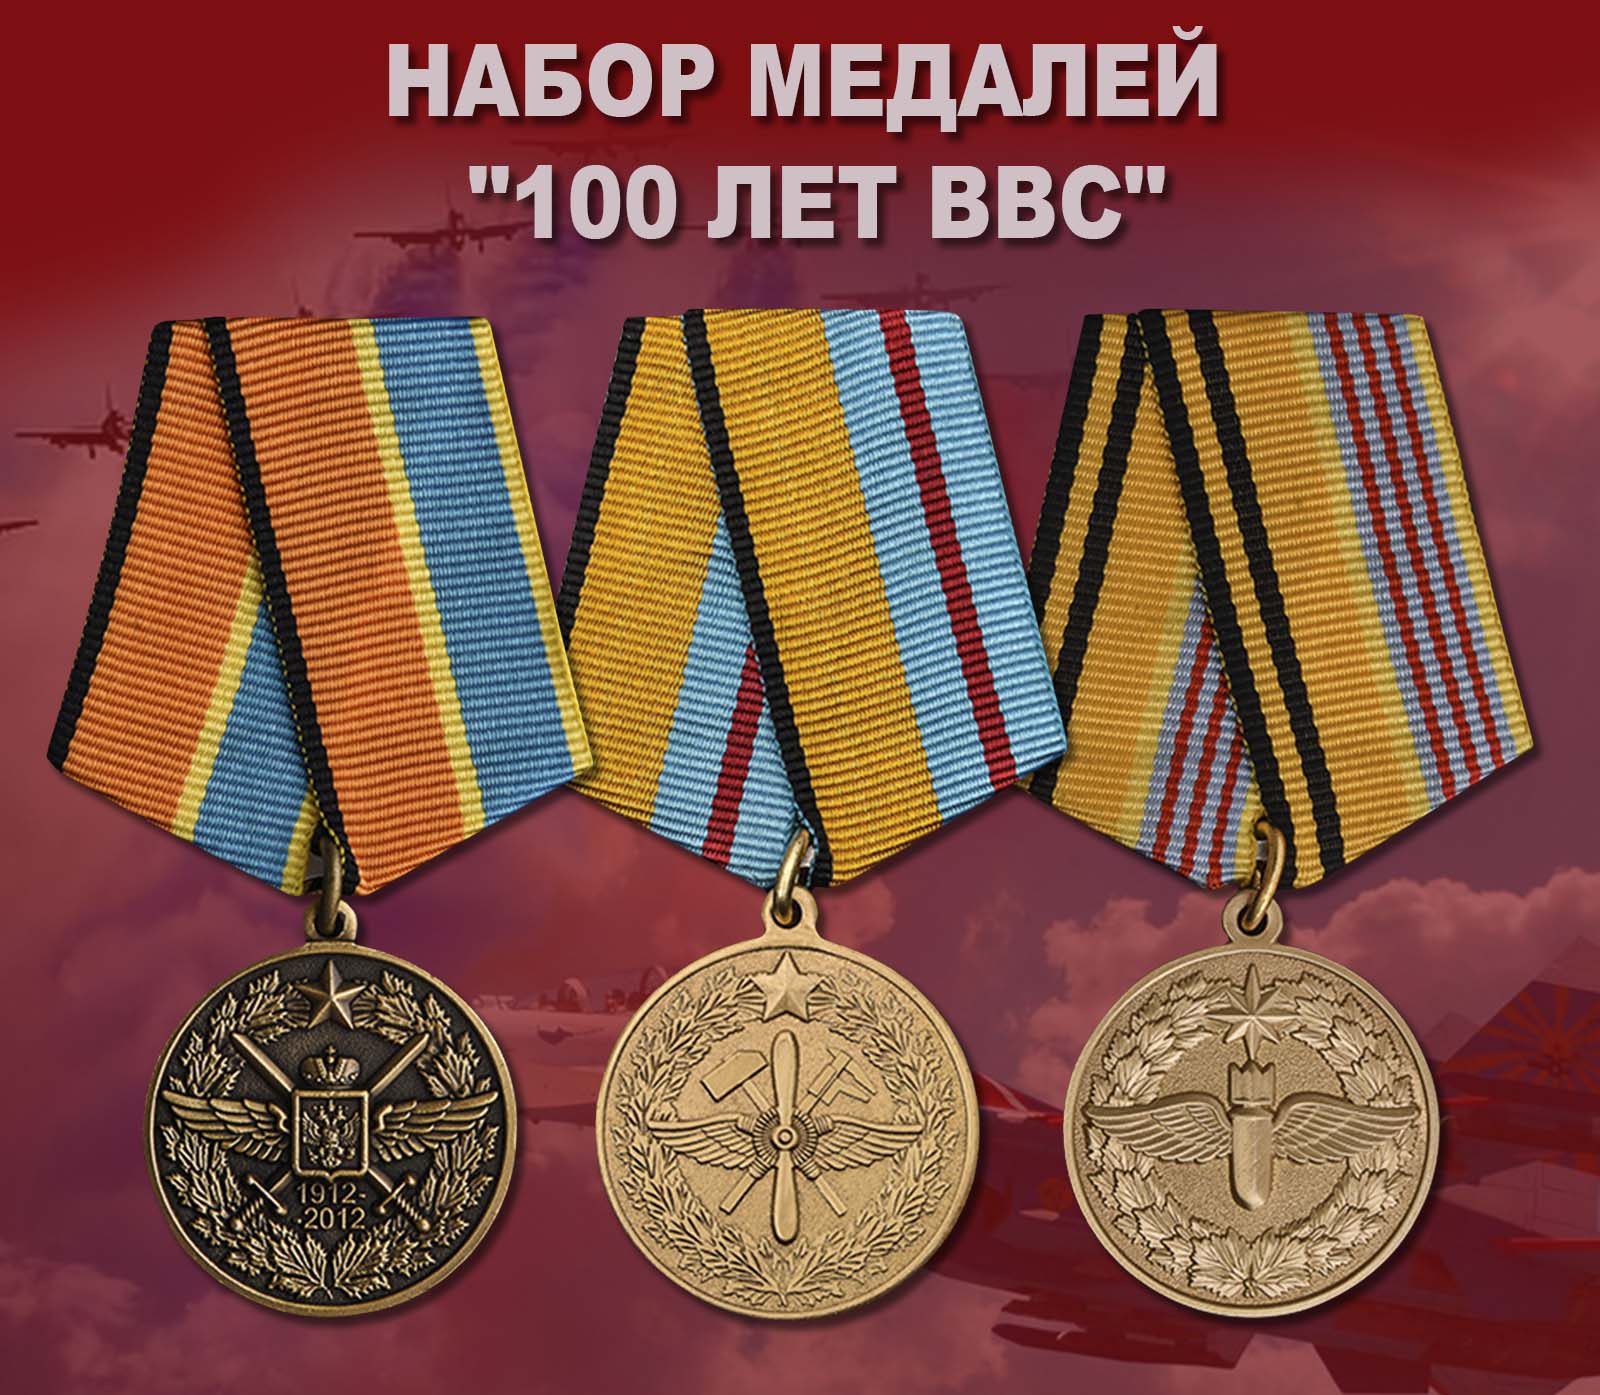 Купить набор медалей "100 лет ВВС"